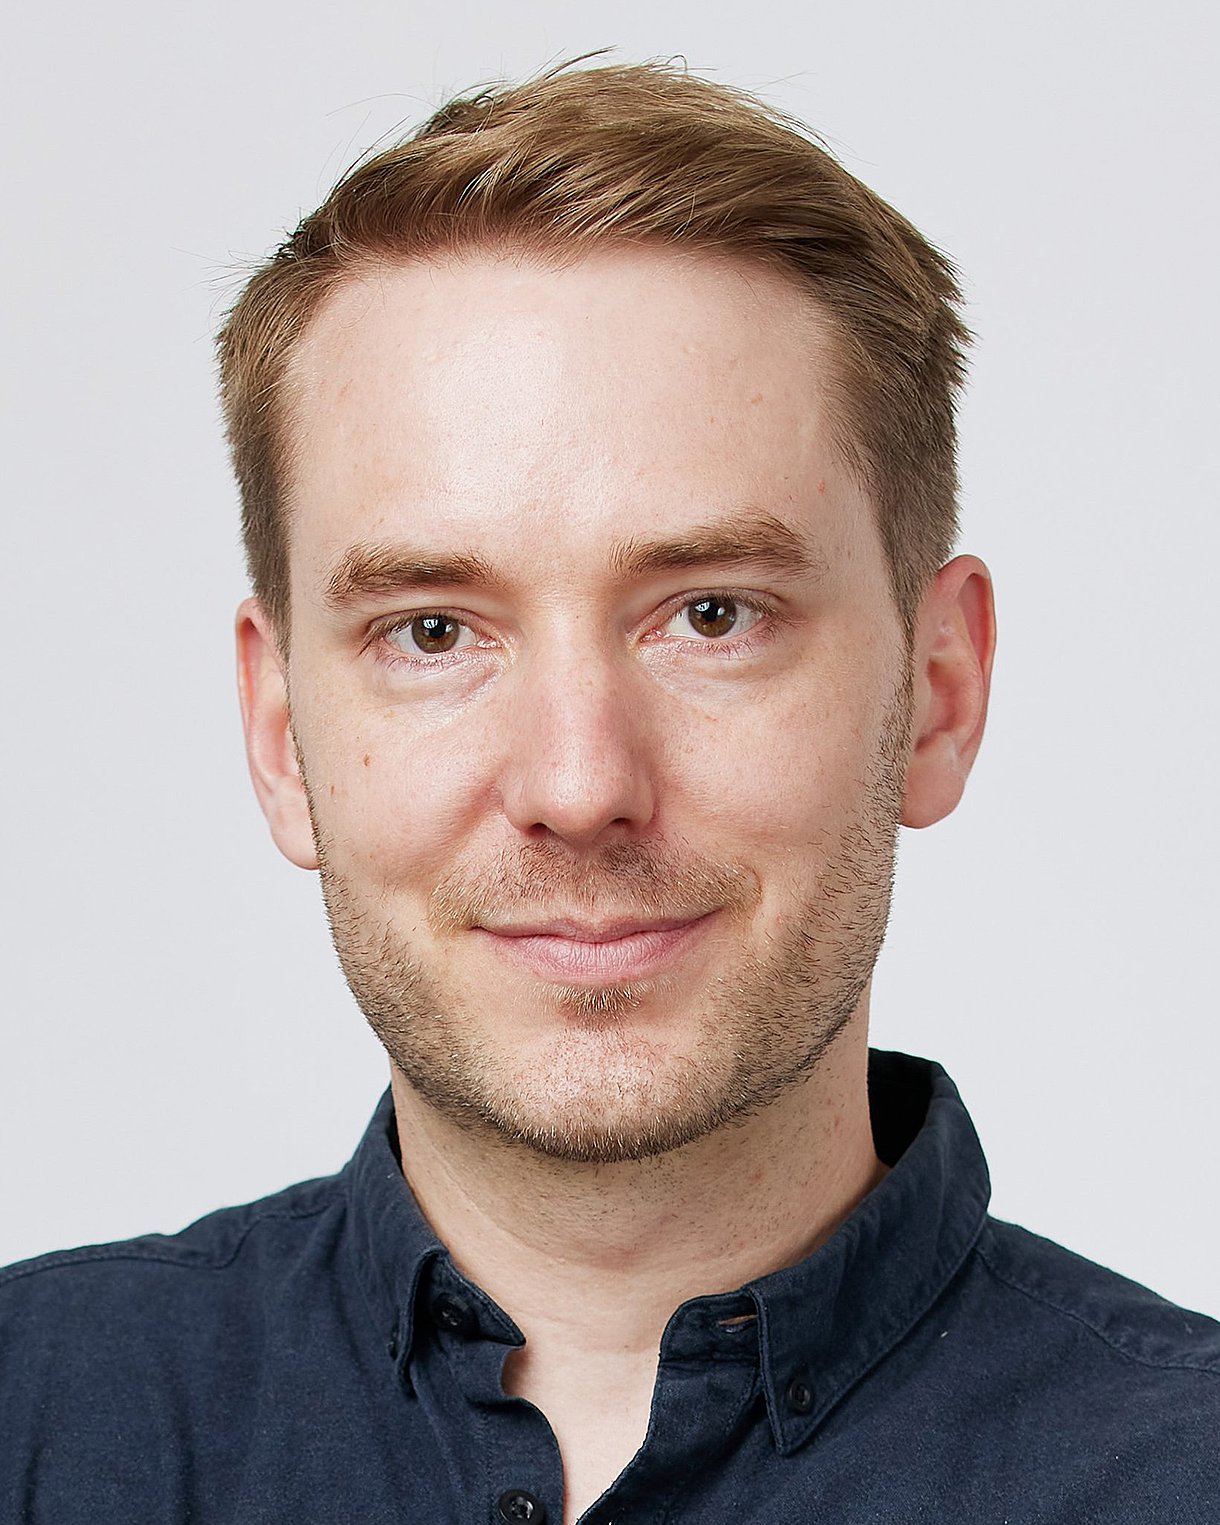 Porträt von Jürgen Klöckner, Korrespondent für Gesundheitspolitik beim Handelsblatt